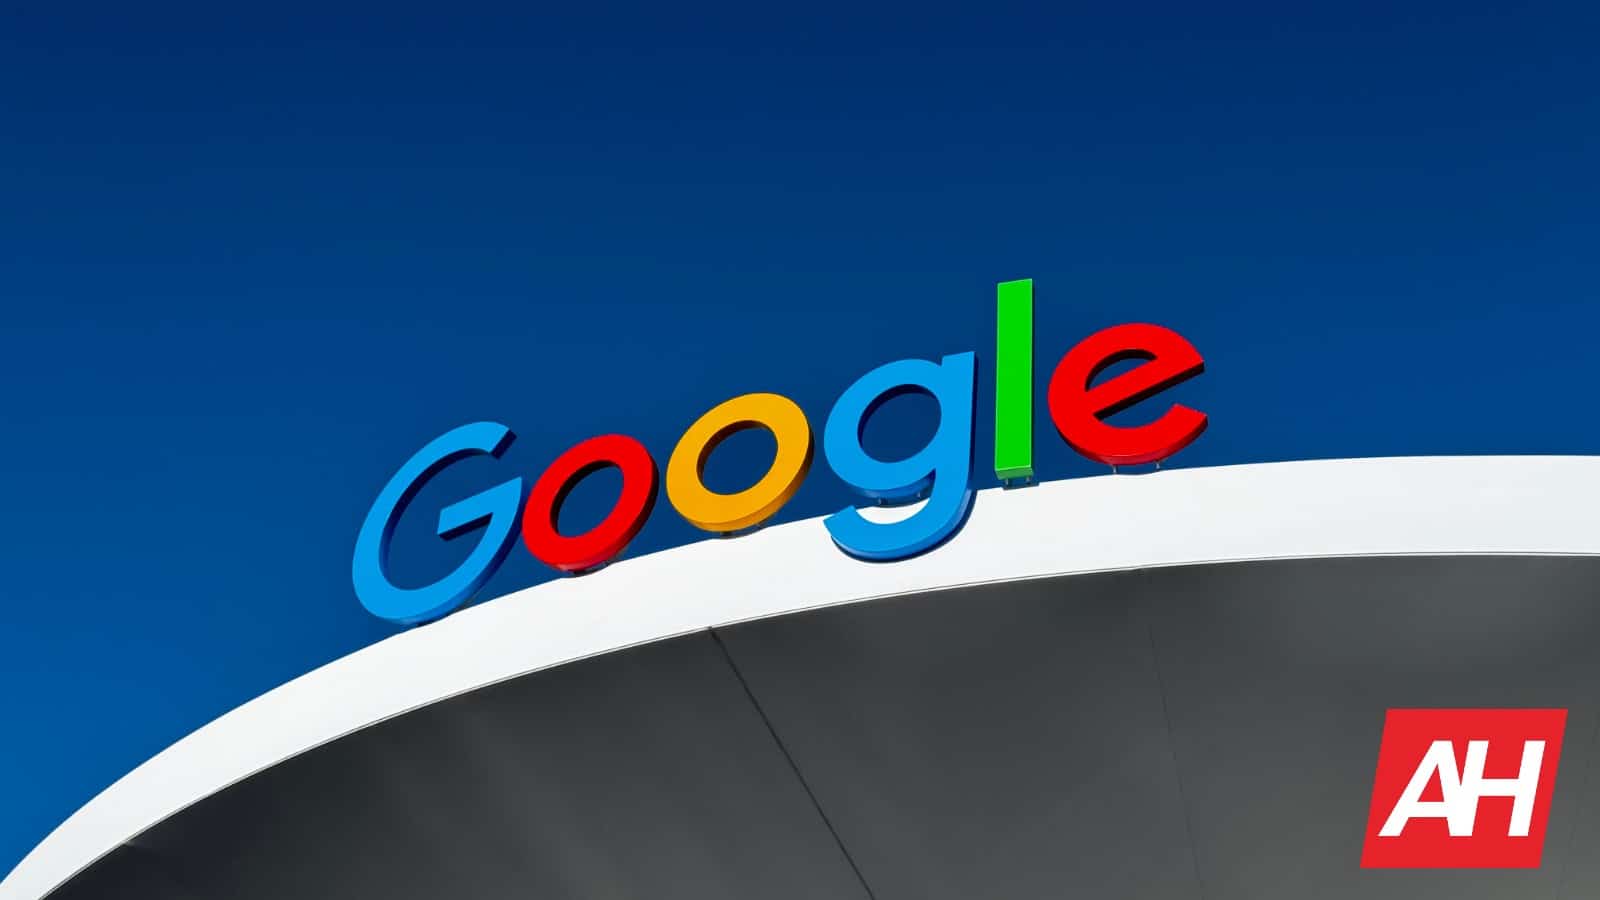 Google despide a 28 empleados tras protestas contra el Proyecto Nimbus